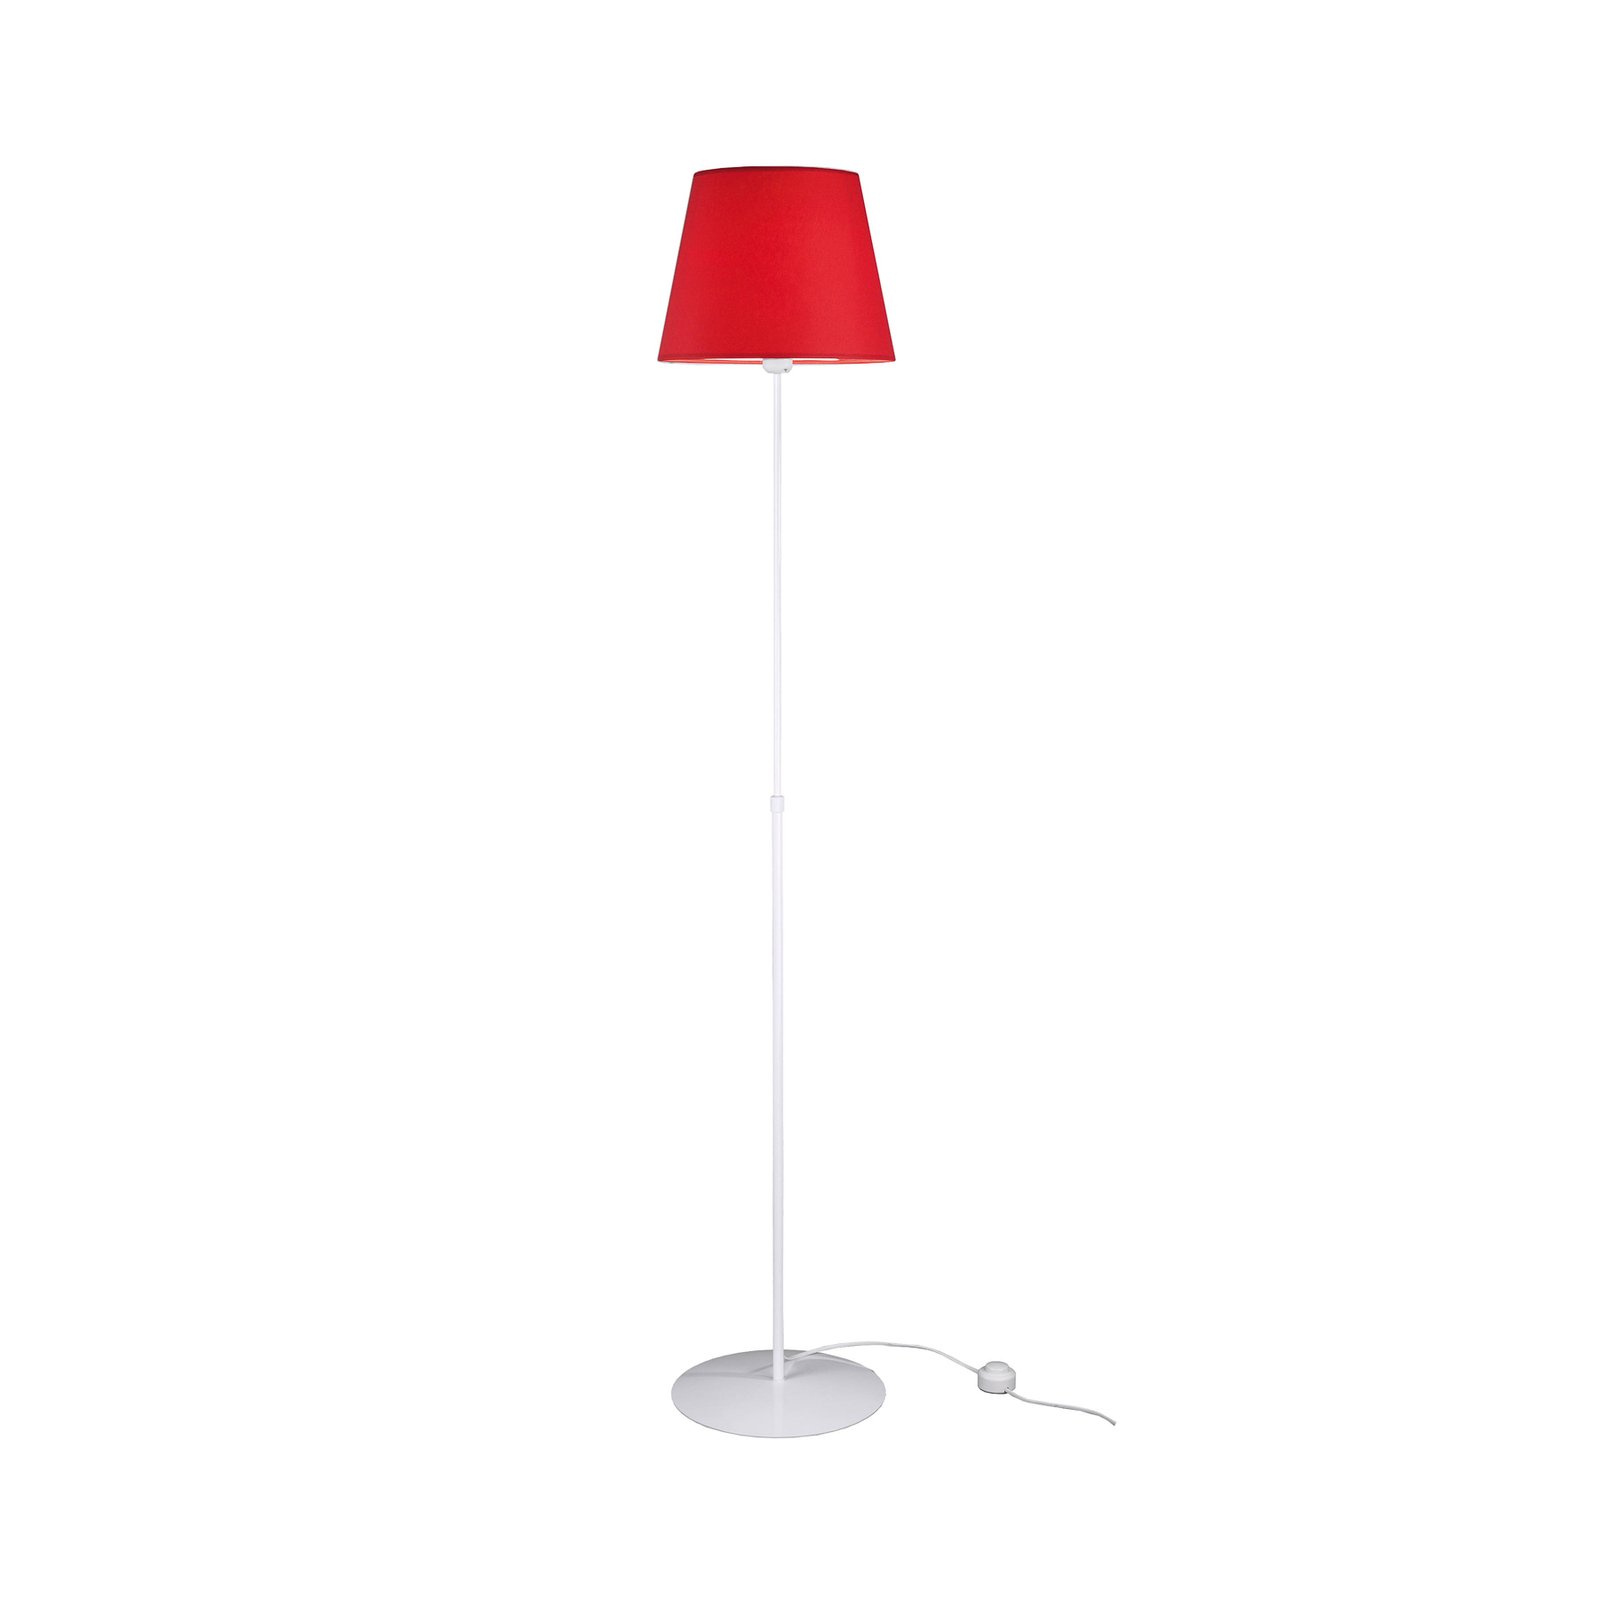 Aluminor Store lampa stojąca, biała/czerwona